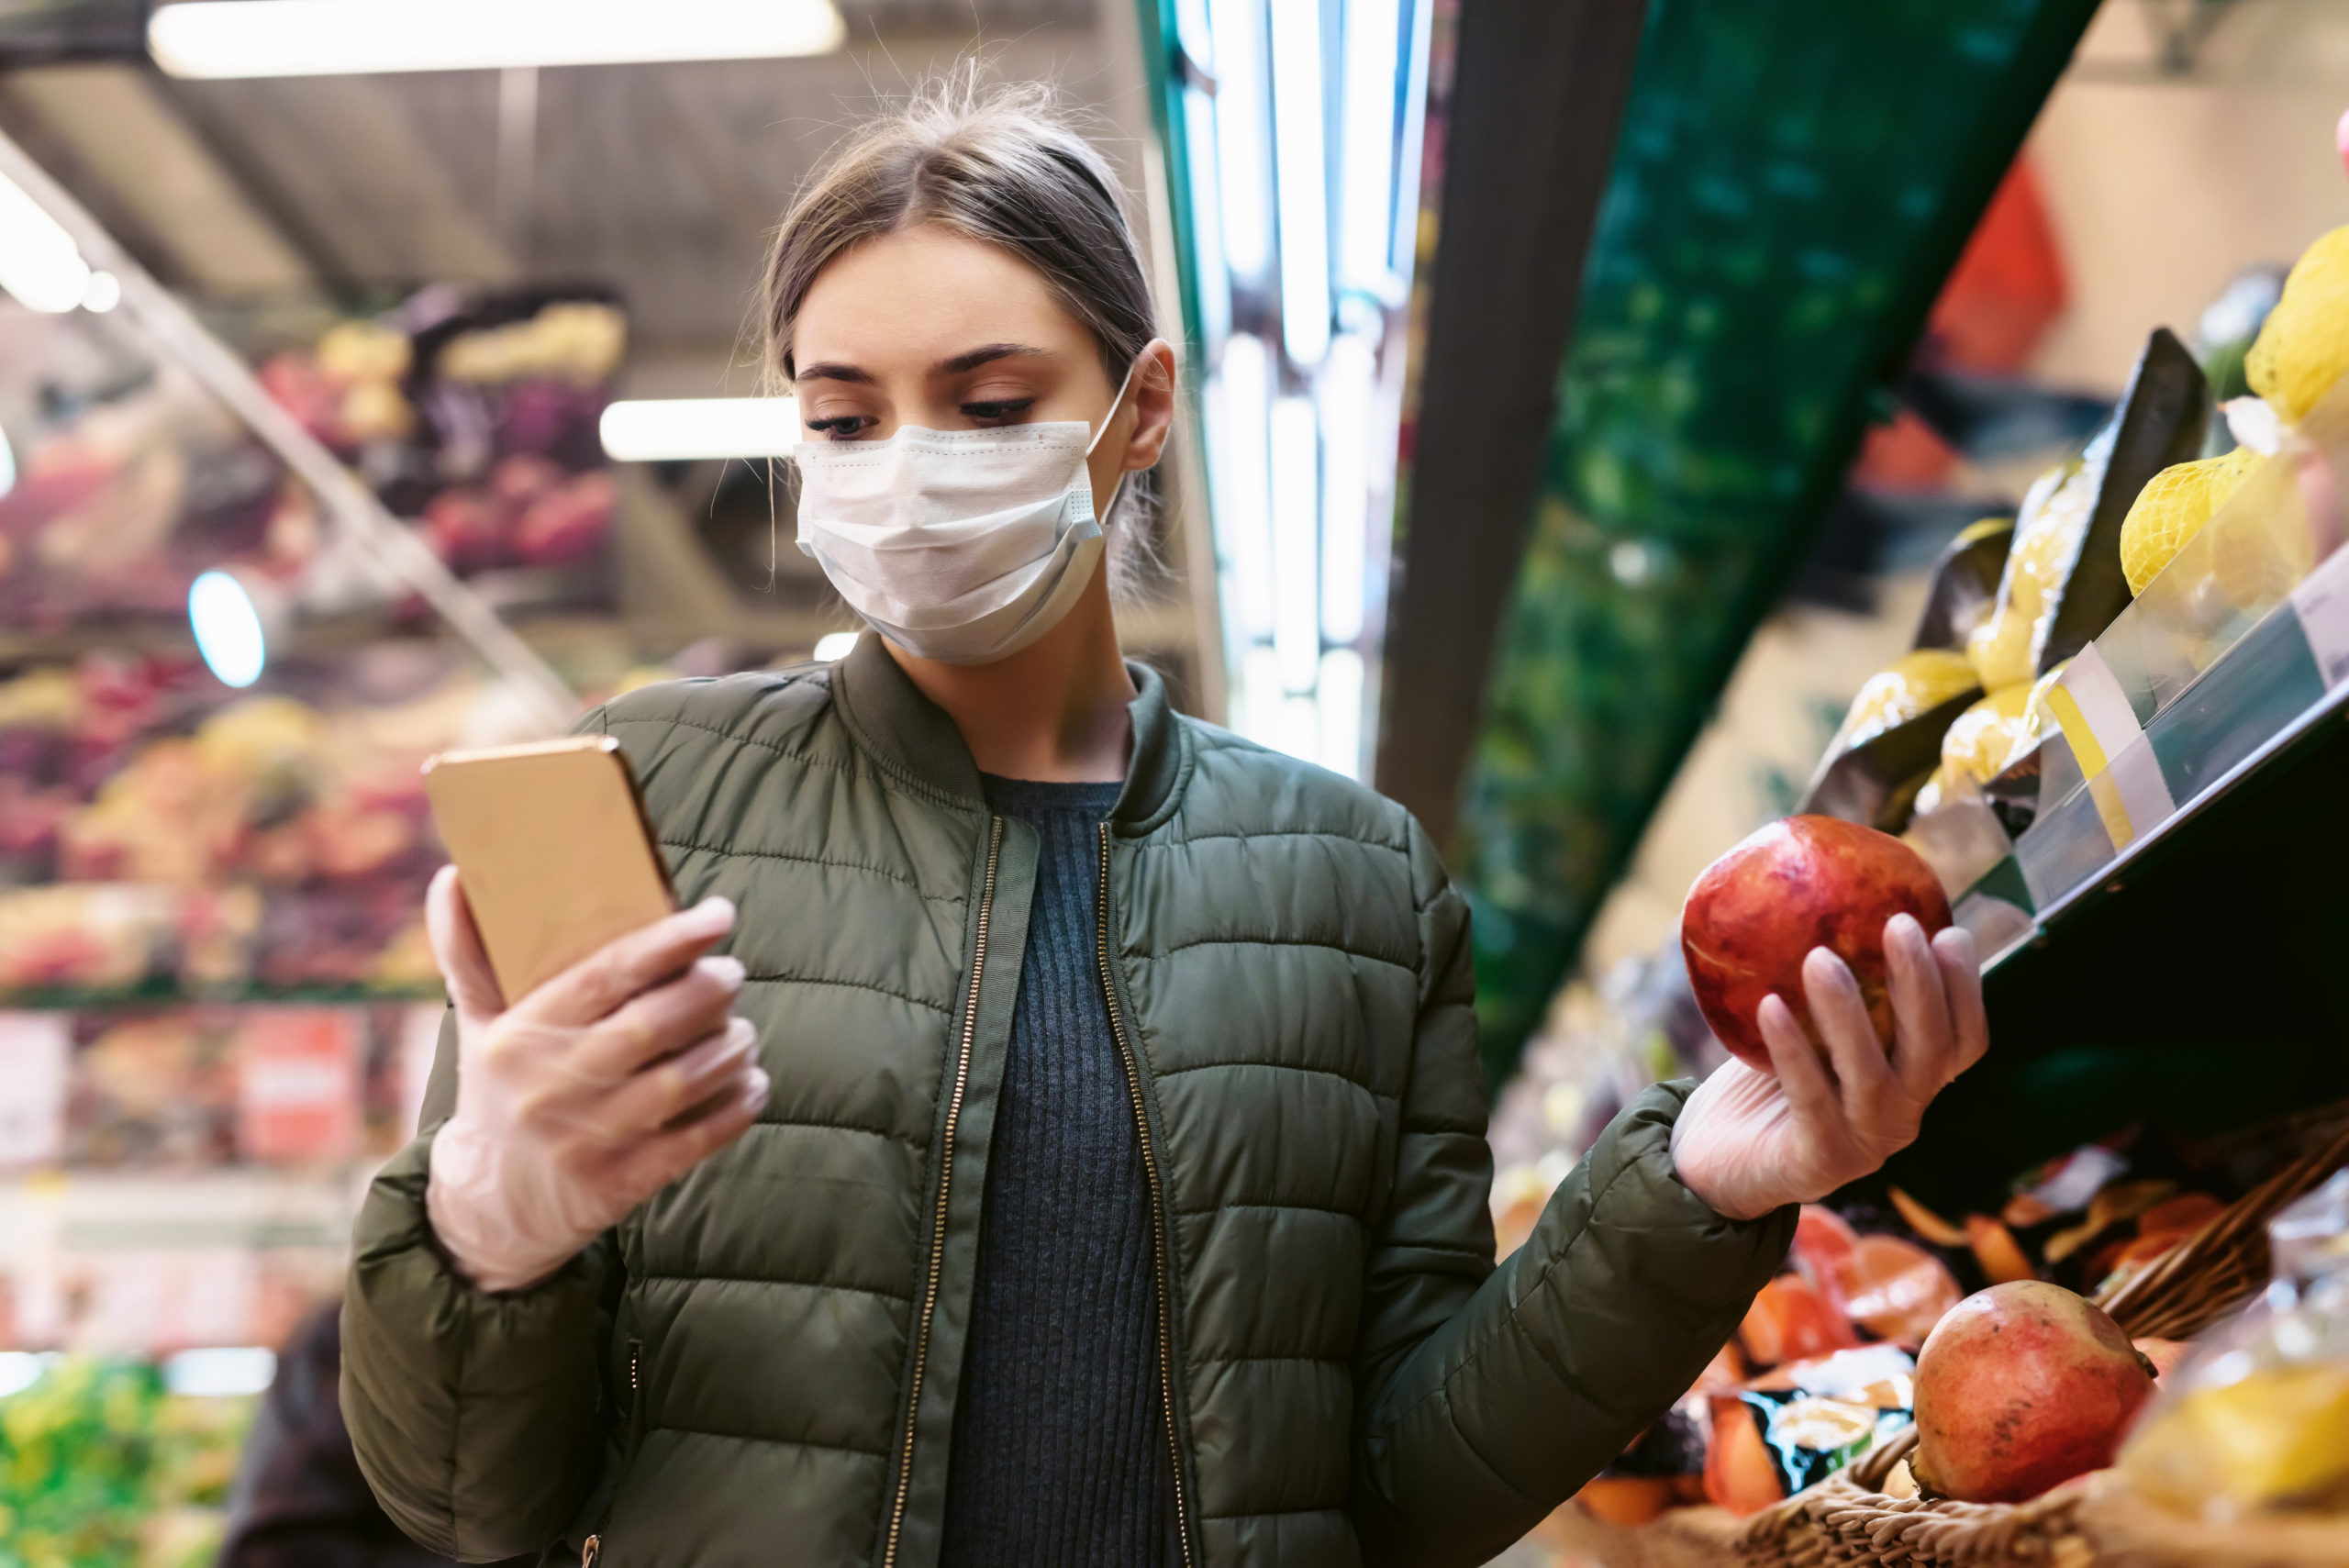 Eine junge Frau in einer Einwegmaske überprüft eine Einkaufsliste auf einem Smartphone im Supermarkt. Soziale Entfernung während der Pandemie des Coronavirus Covid-19